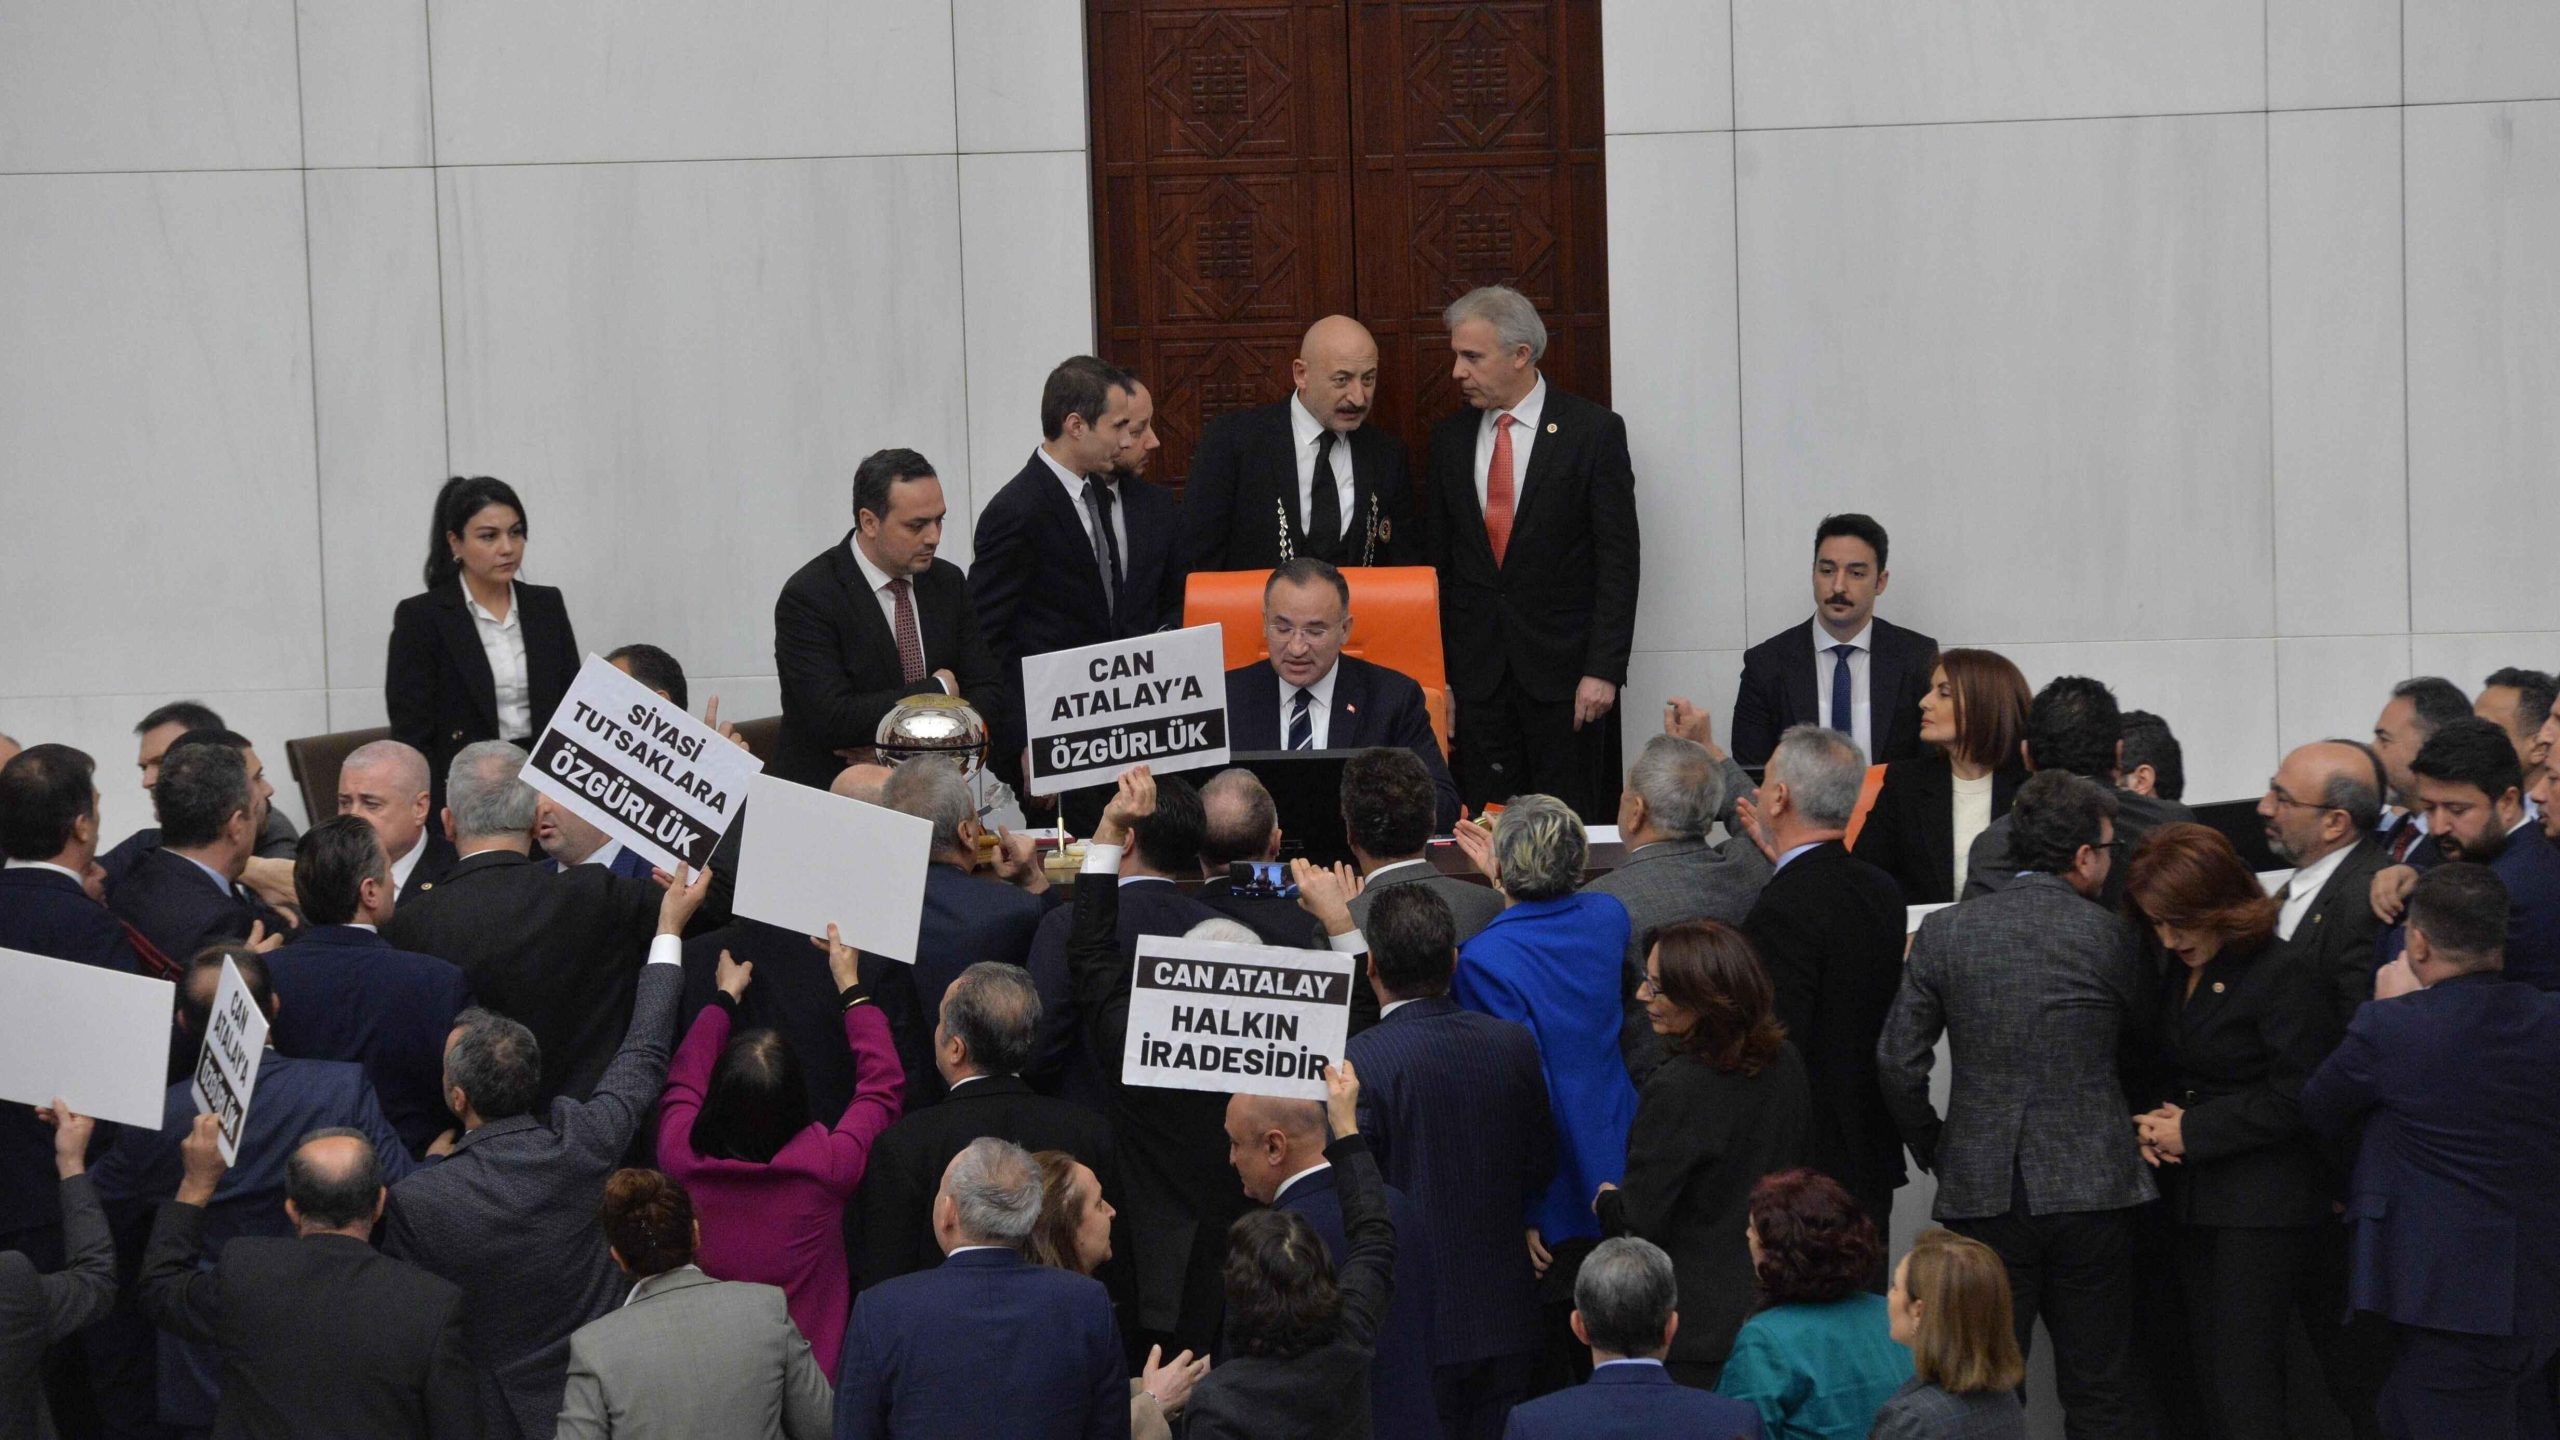 Het parlement ontneemt de gevangengenomen TİP-wetgever zijn zetel